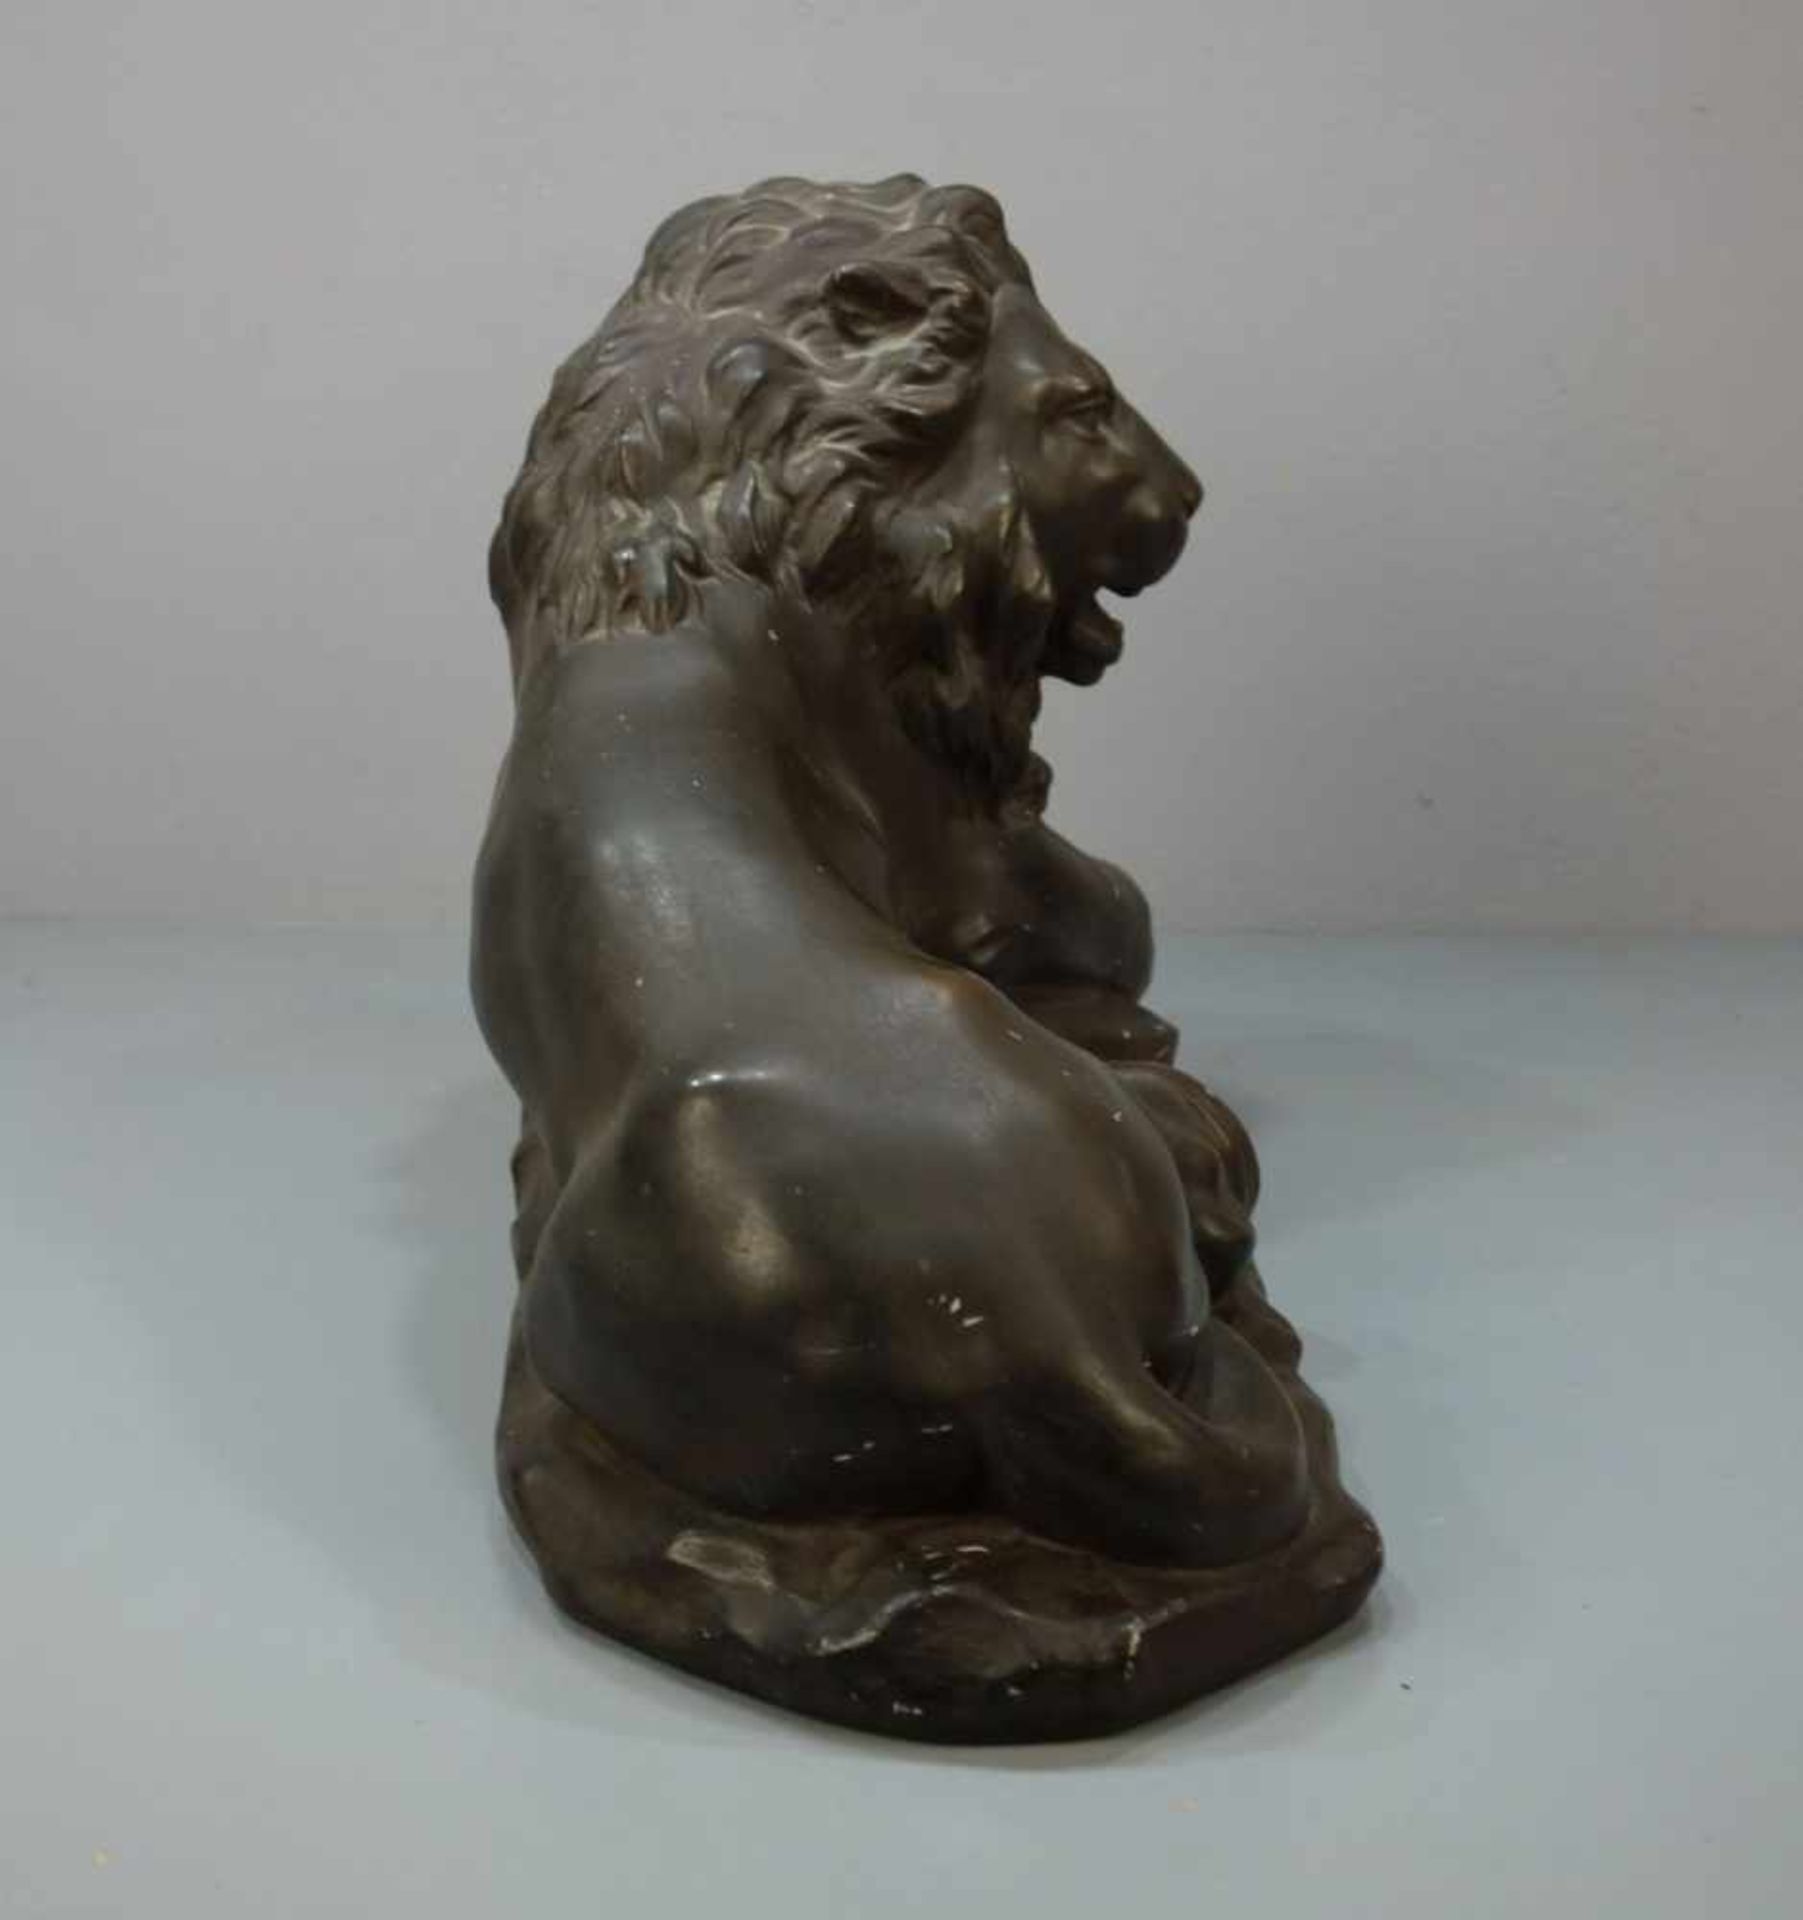 MOECKEL, P. E. (Bildhauer / Animalier des 20. Jh.), Skulptur: "Liegender Löwe", bronzierte Stukko- - Bild 5 aus 5